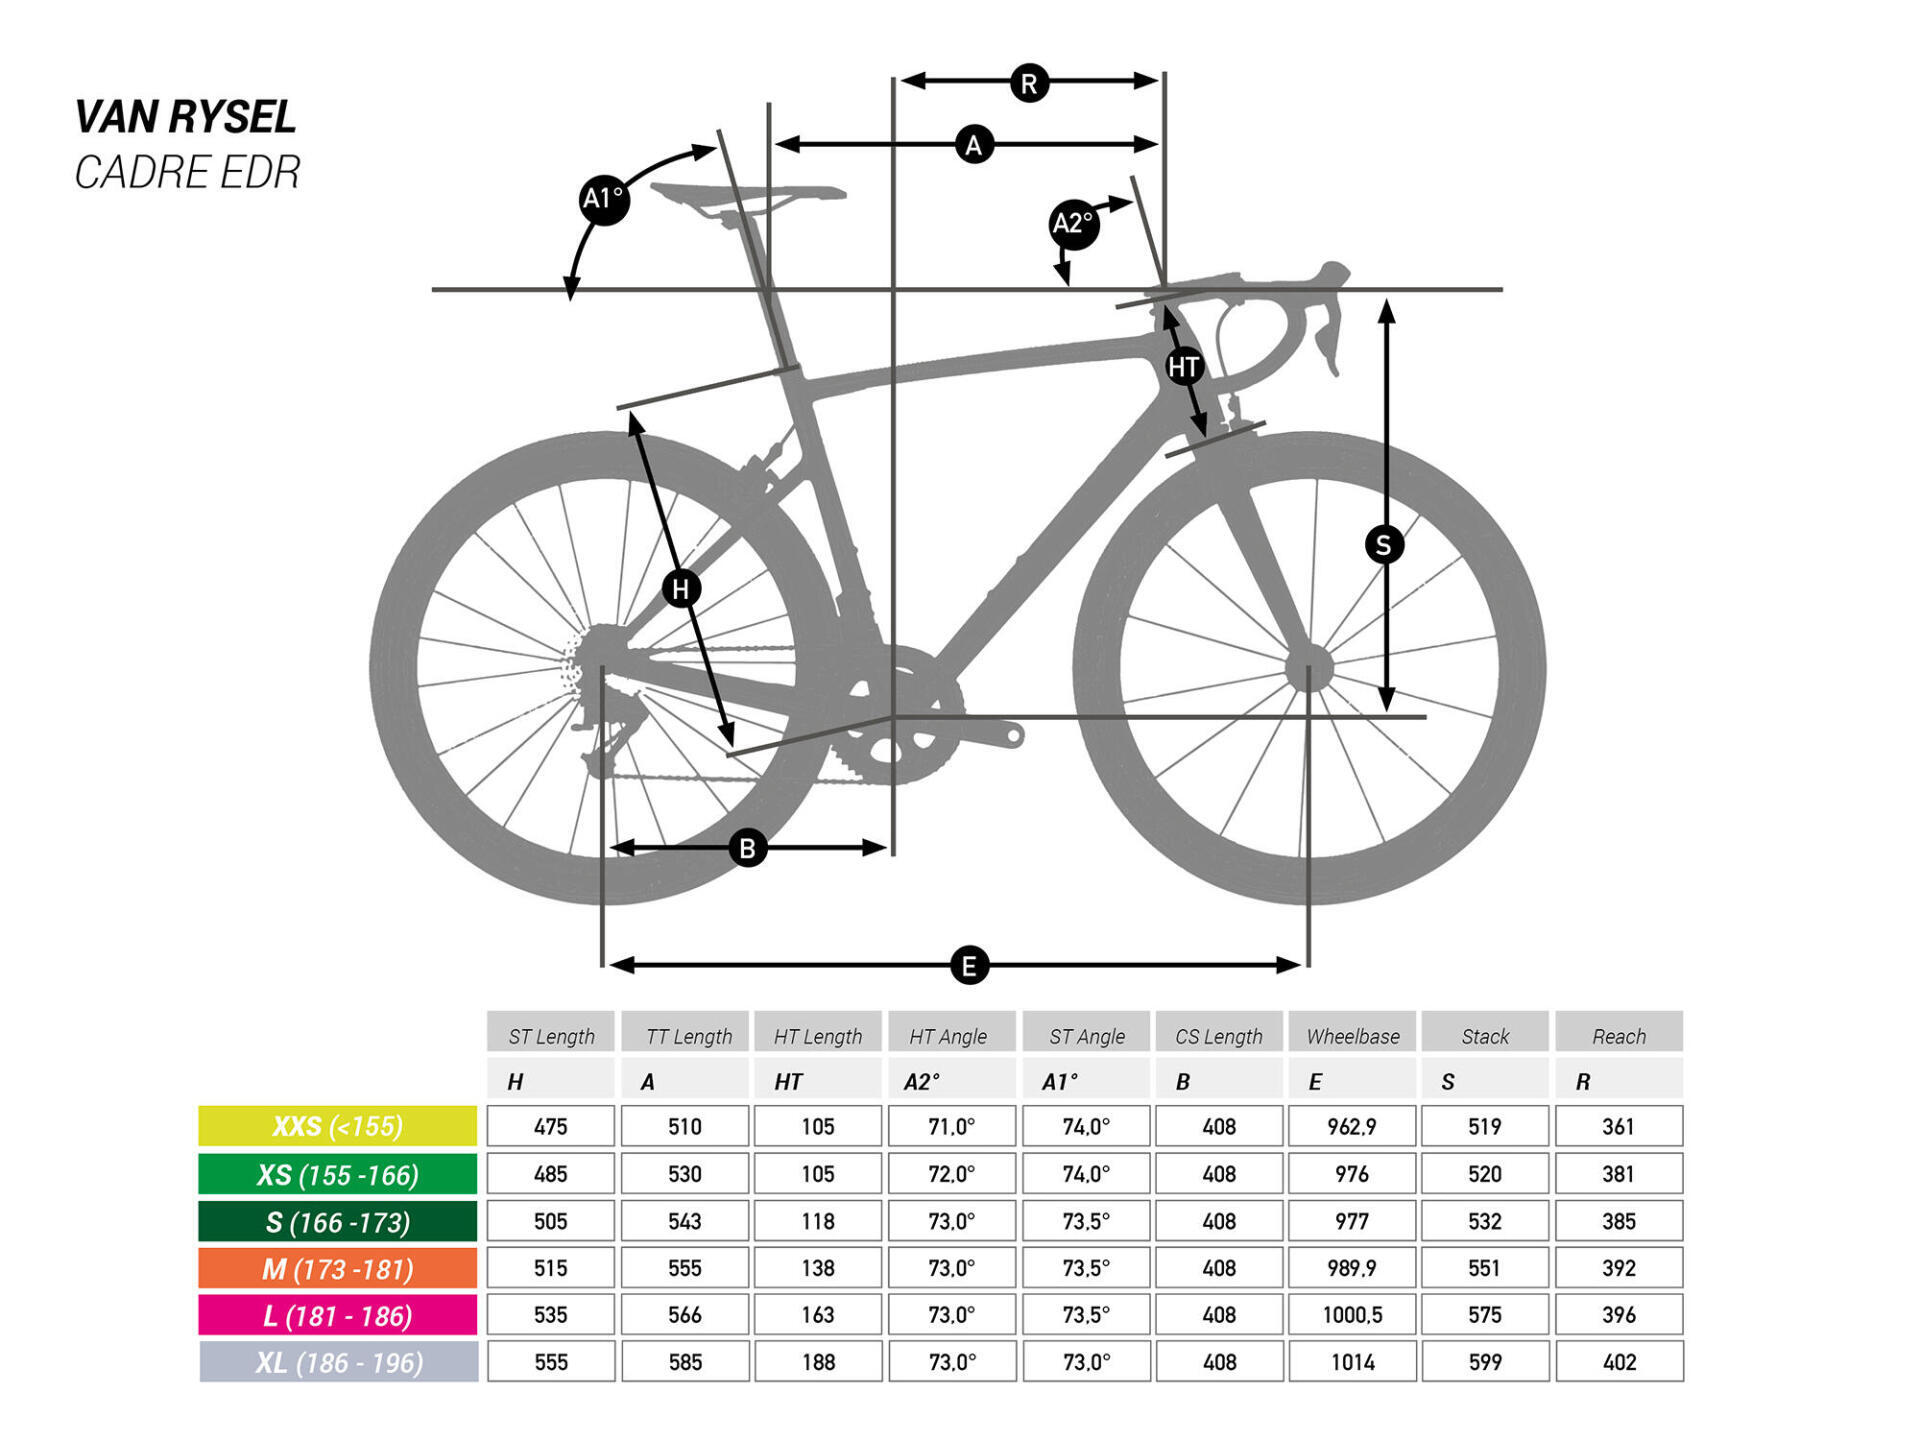 Come scegliere la bici da corsa EDR?